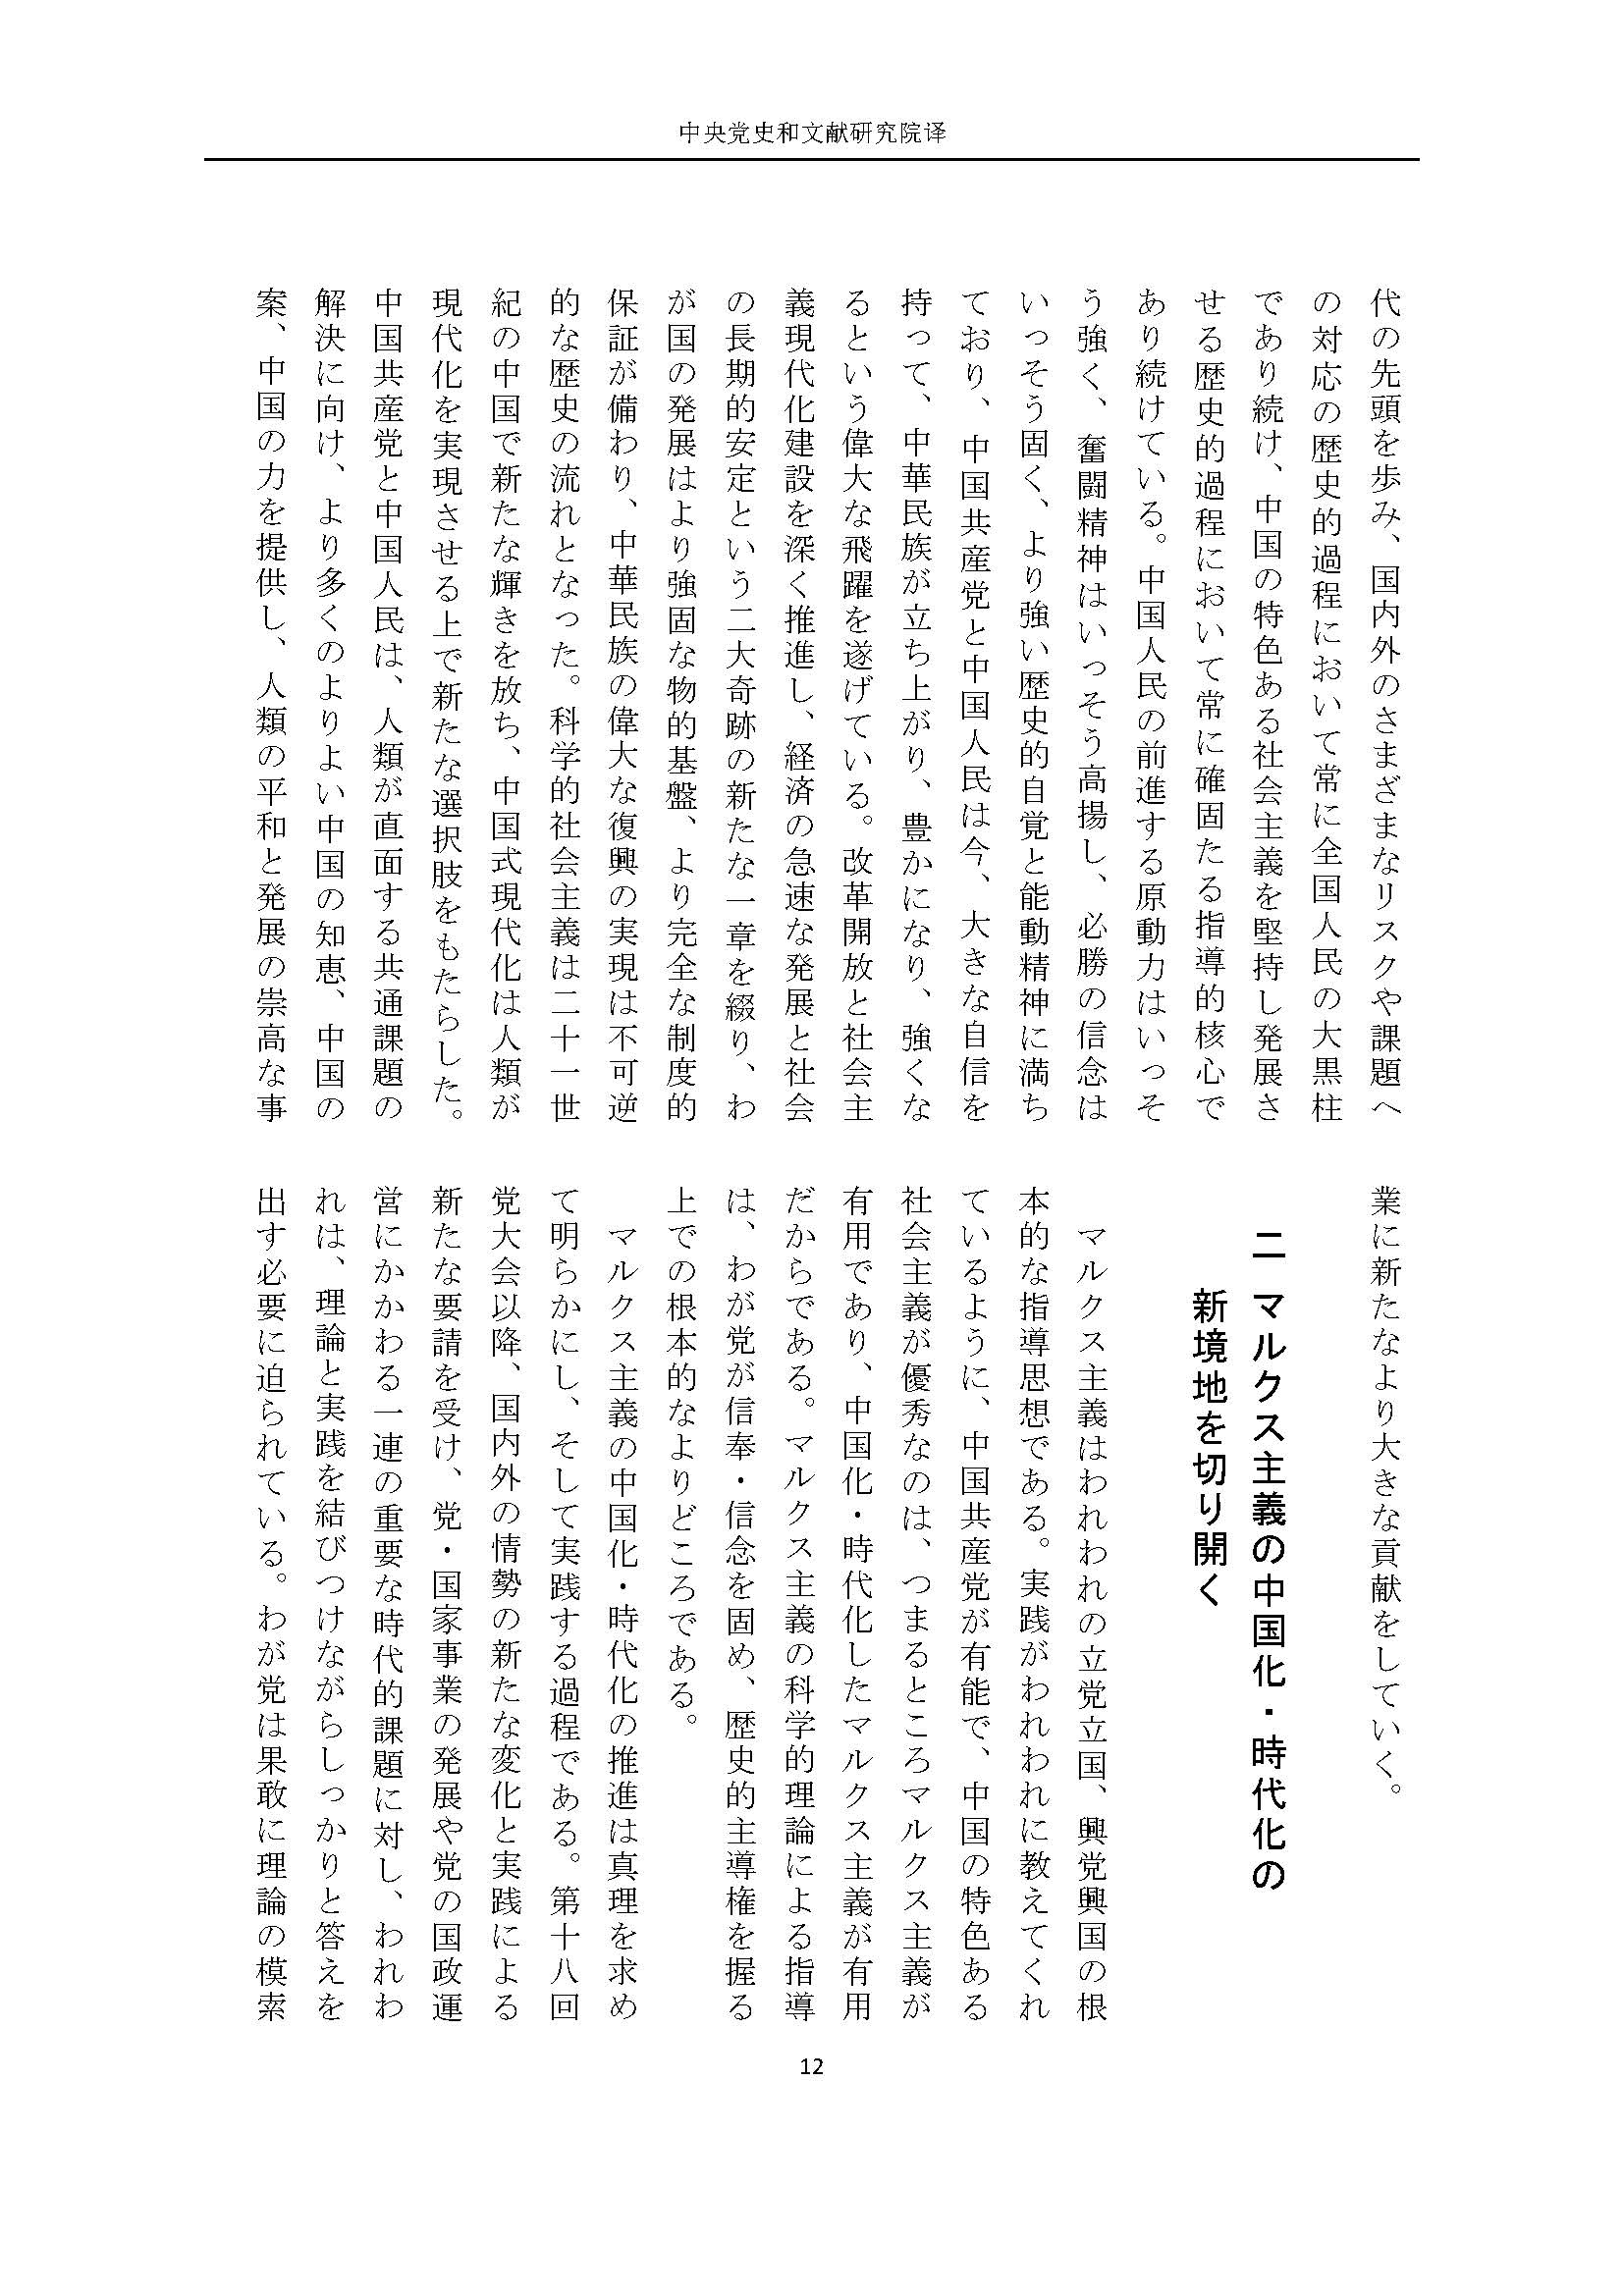 二十大报告（日文全文）_页面_13